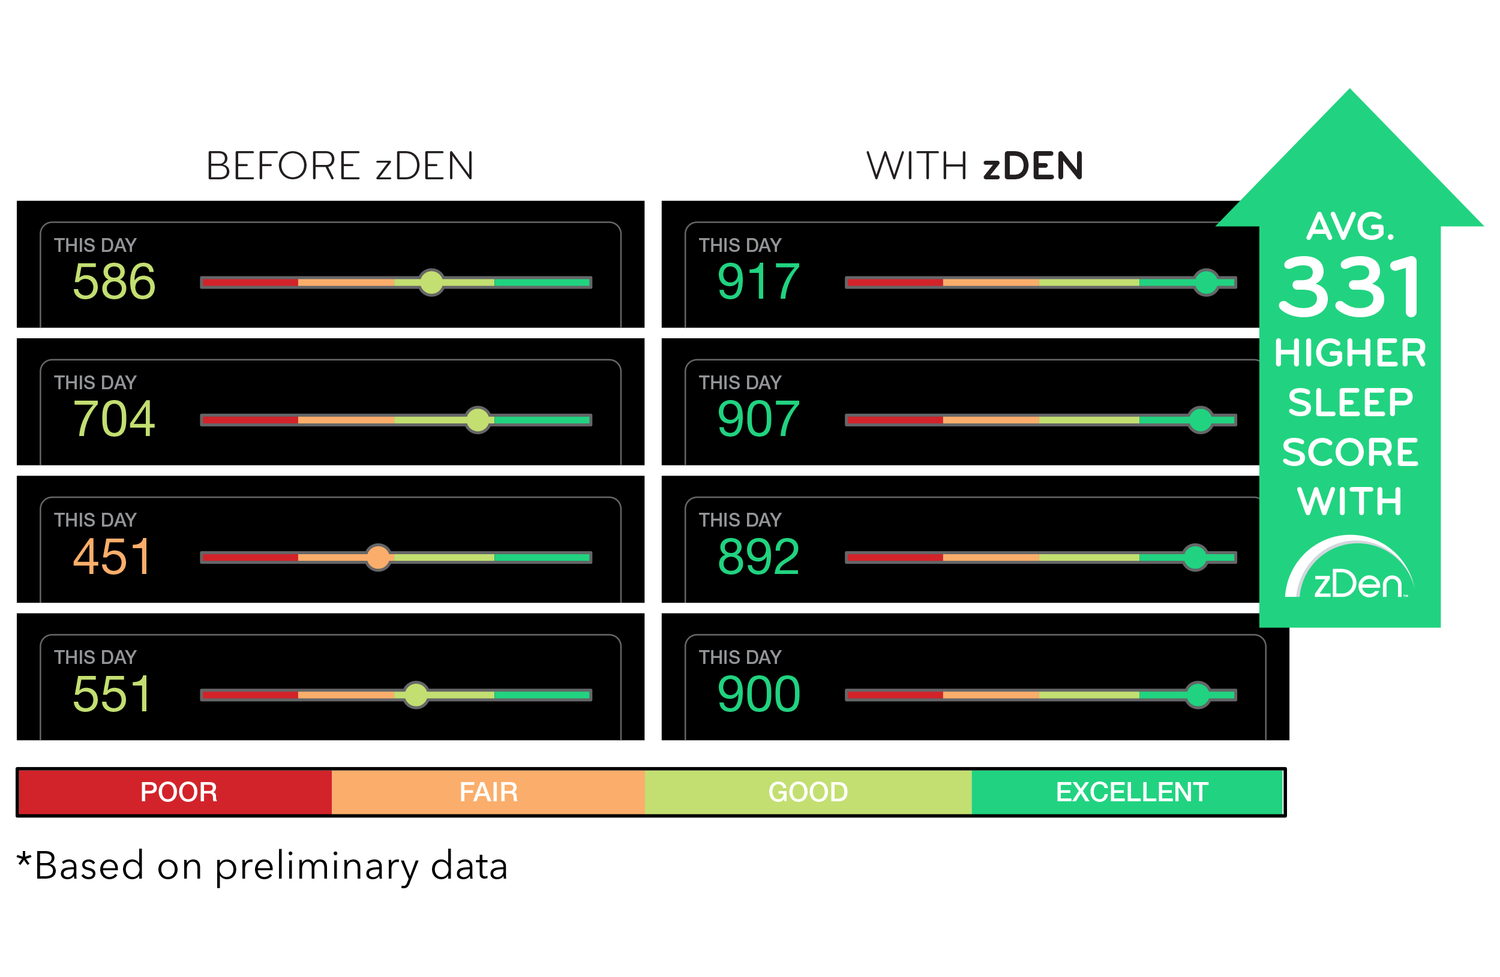 zDen better sleep Apple Watch SleepScore Excellent score. More deep sleep, Sleep deeper.